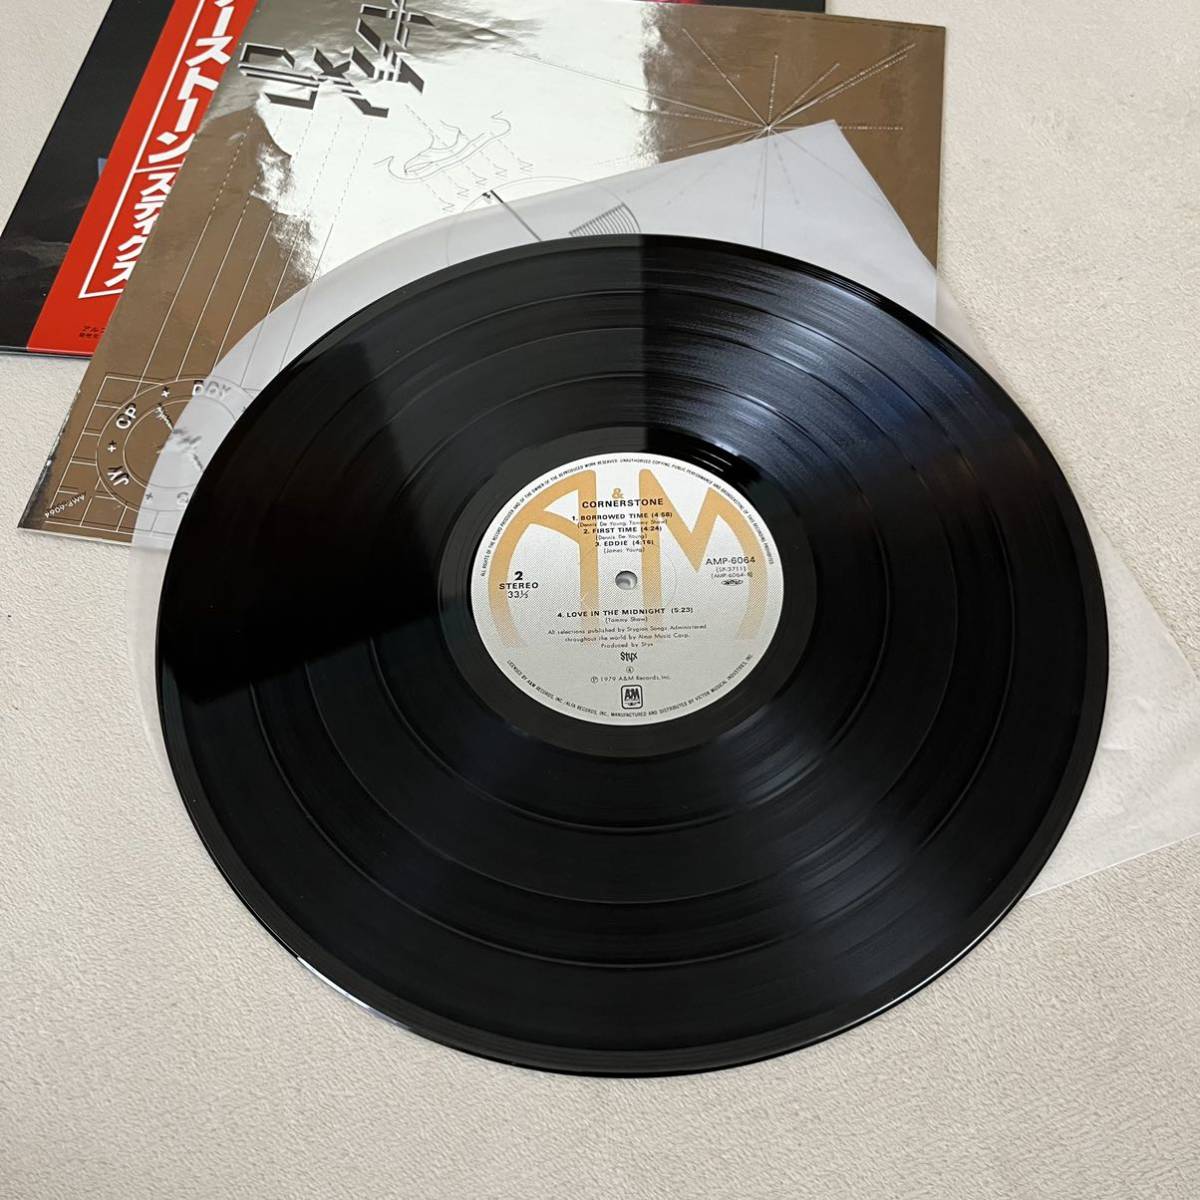 【国内盤帯付】スティクス コーナーストーン STYX CORNERSTONE ネヴァーセイネヴァー BORROWED TIME/ LP レコード / AMP-6064 /_画像9